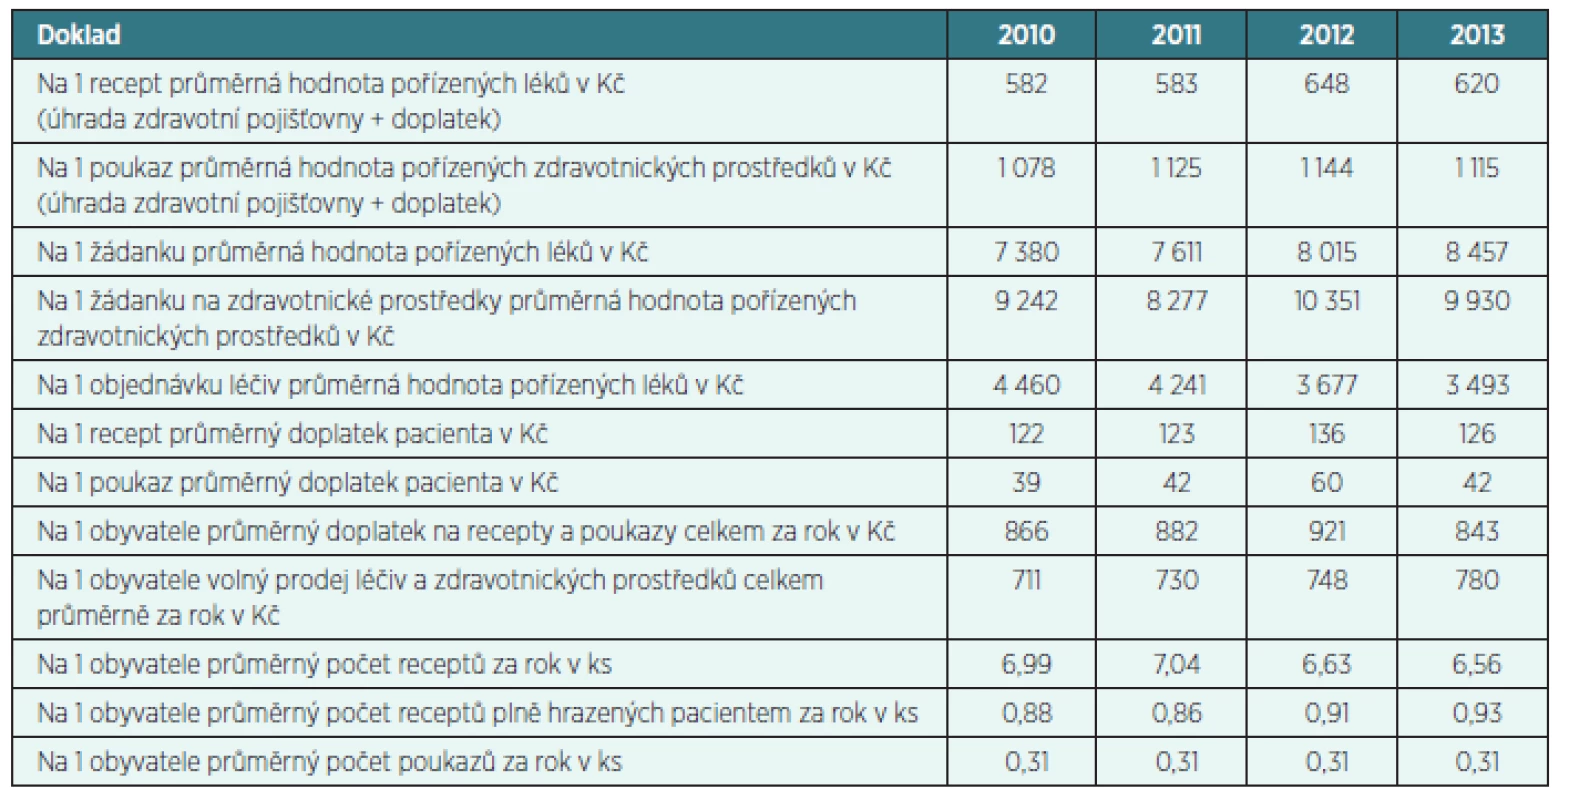 Průměrná tržba na 1 doklad v Kč a počet dokladů na 1 obyvatele v lékárenské péči 
v letech 2010–2013